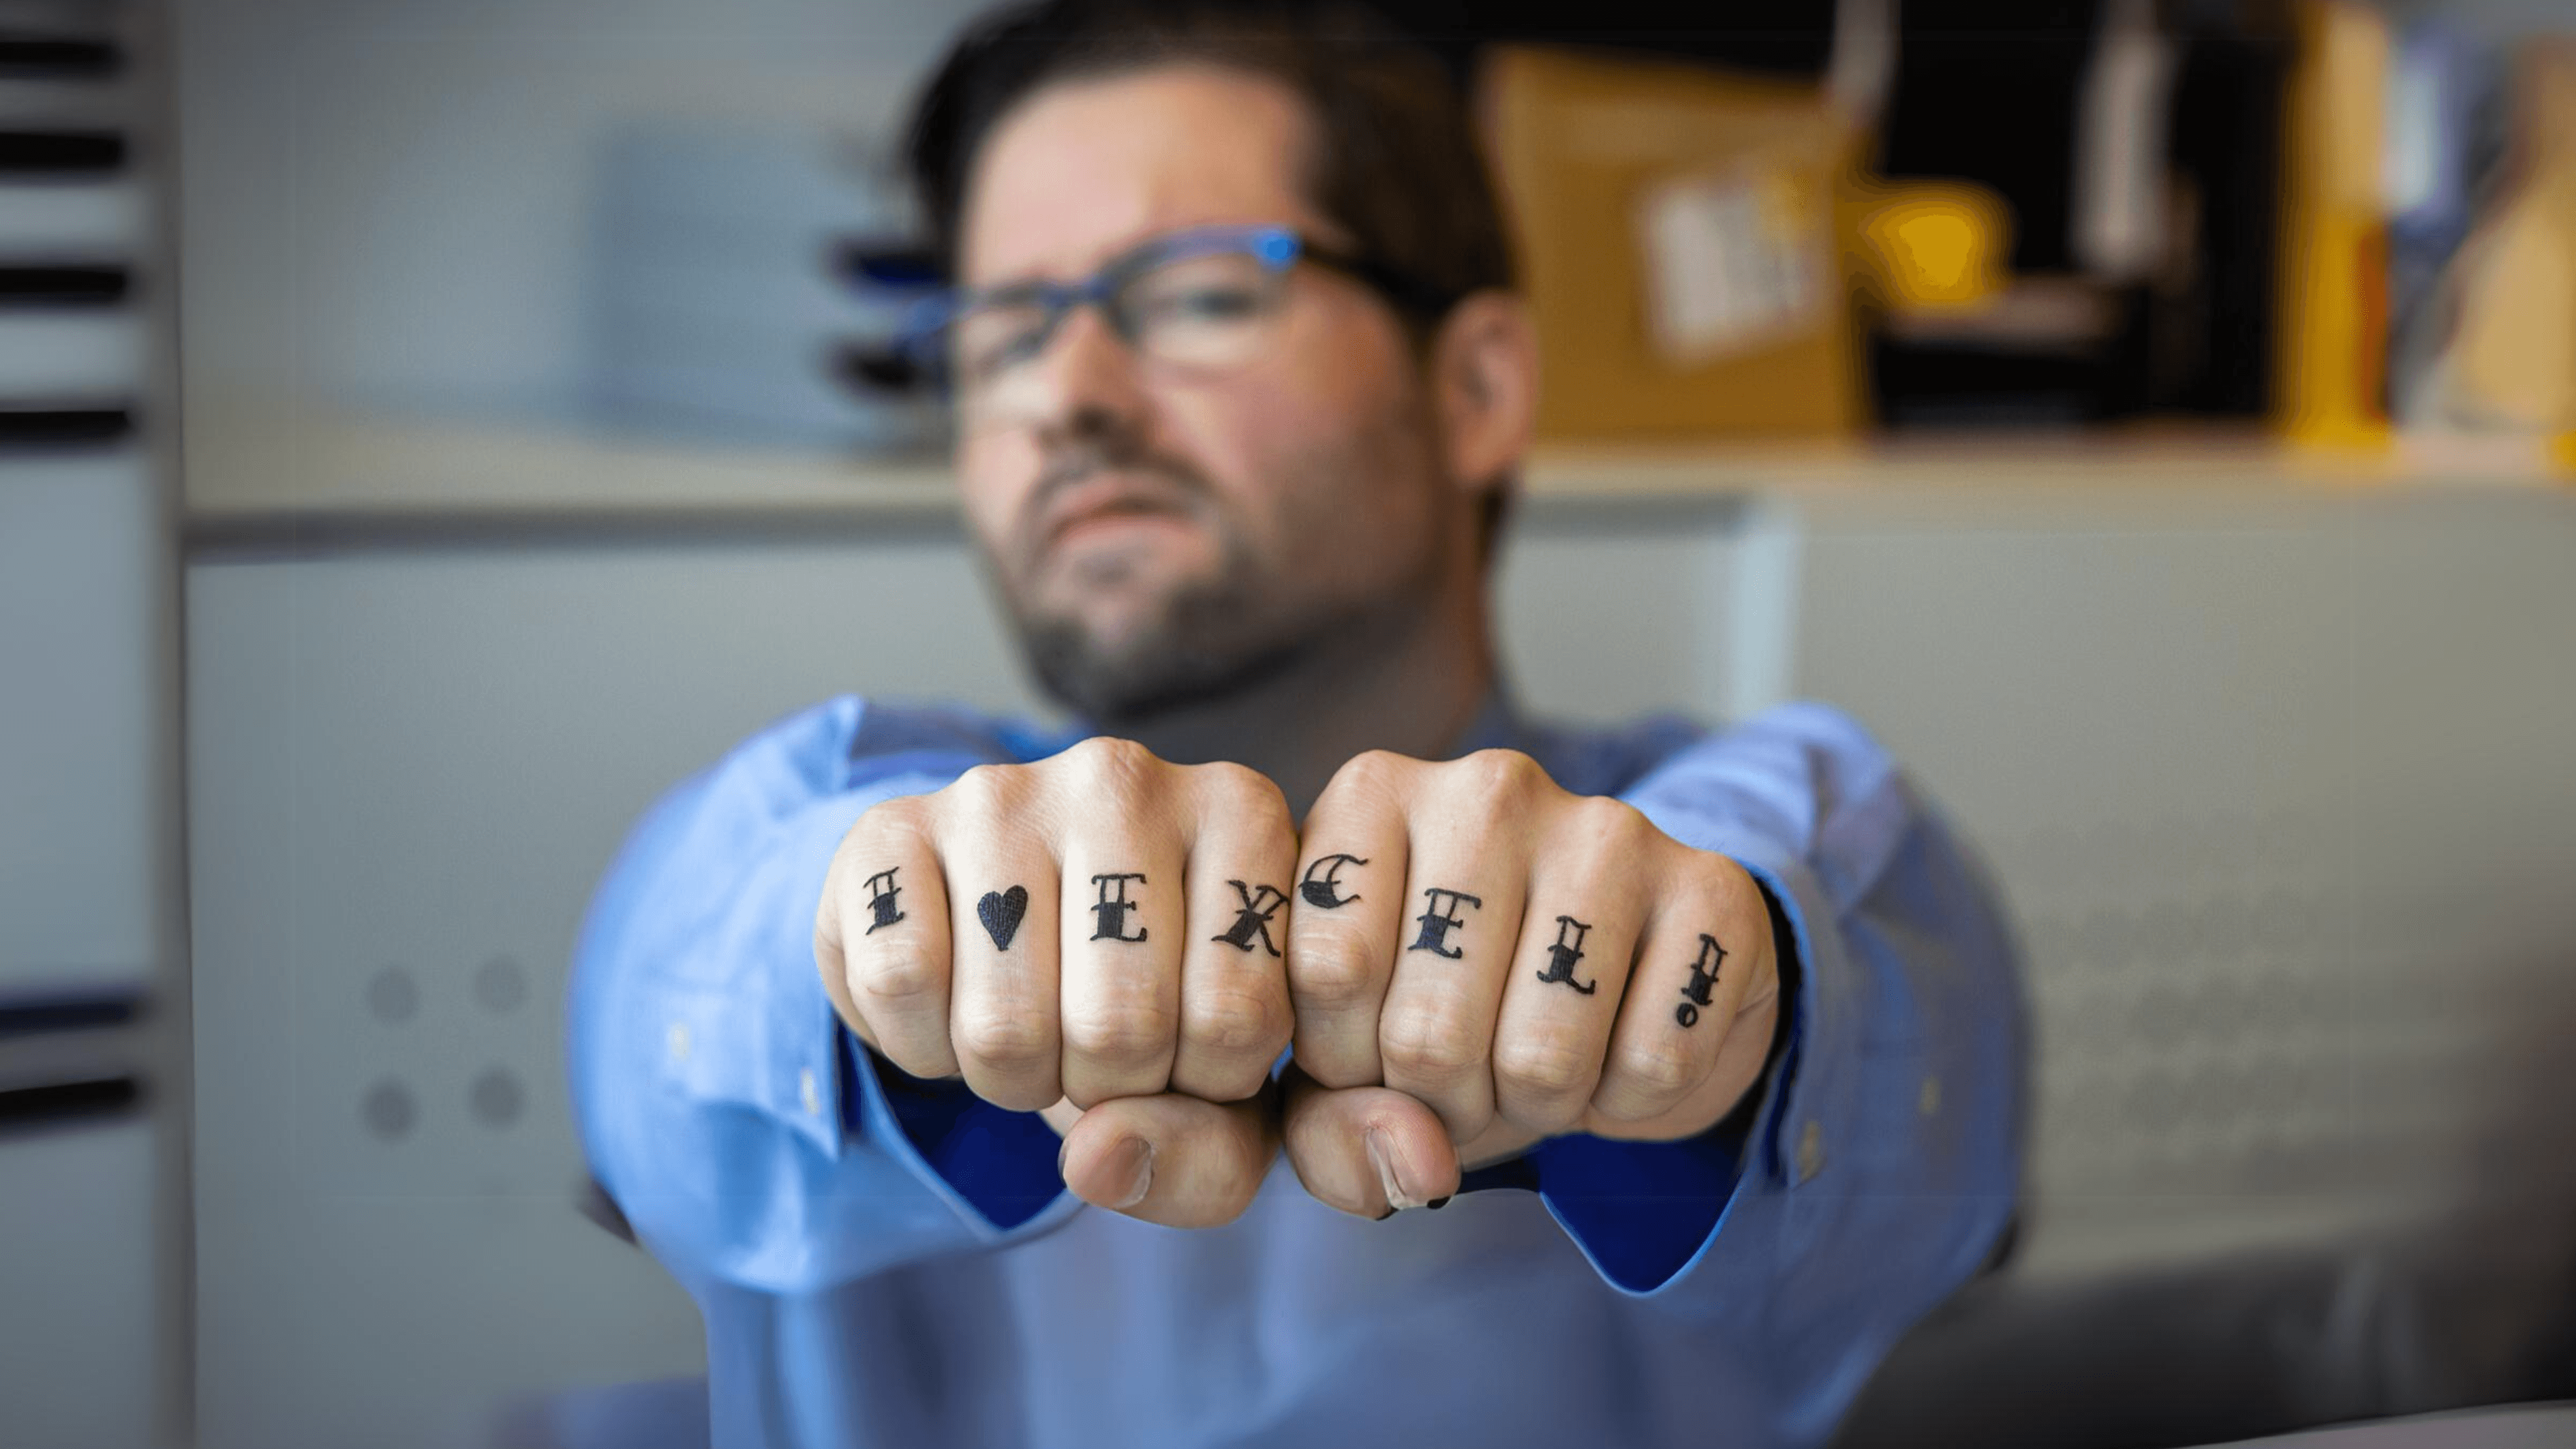 Employé de la finance avec le tatouage "I love excell !".